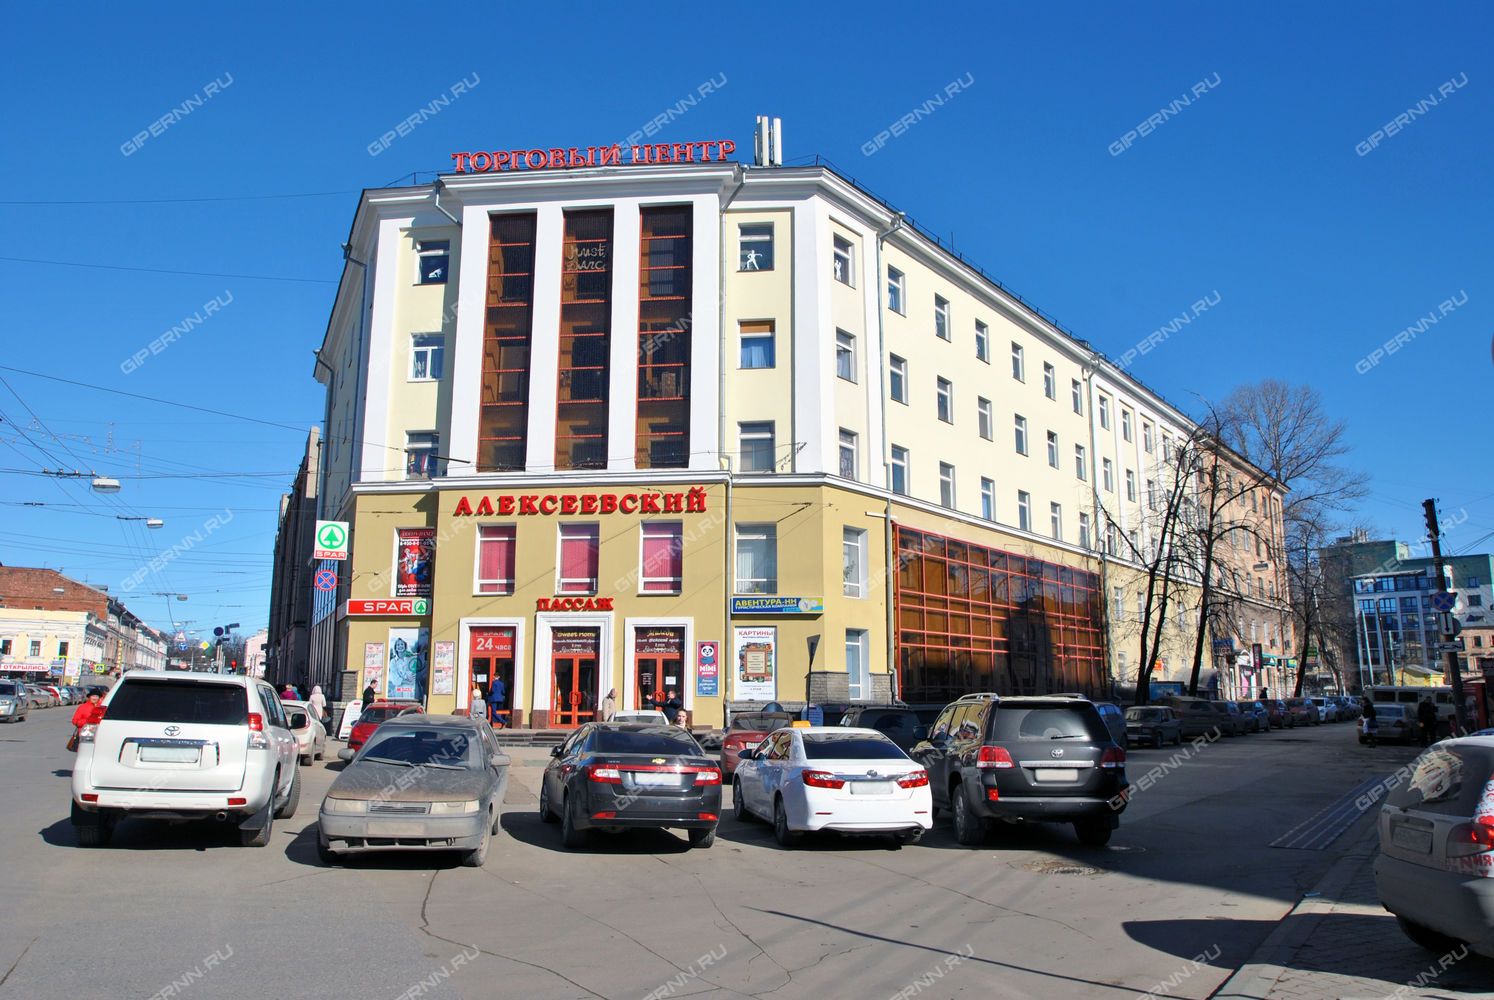 ПИМУ выкупил здание Алексеевского пассажа в Нижнем Новгороде за 195 млн рублей  - фото 1